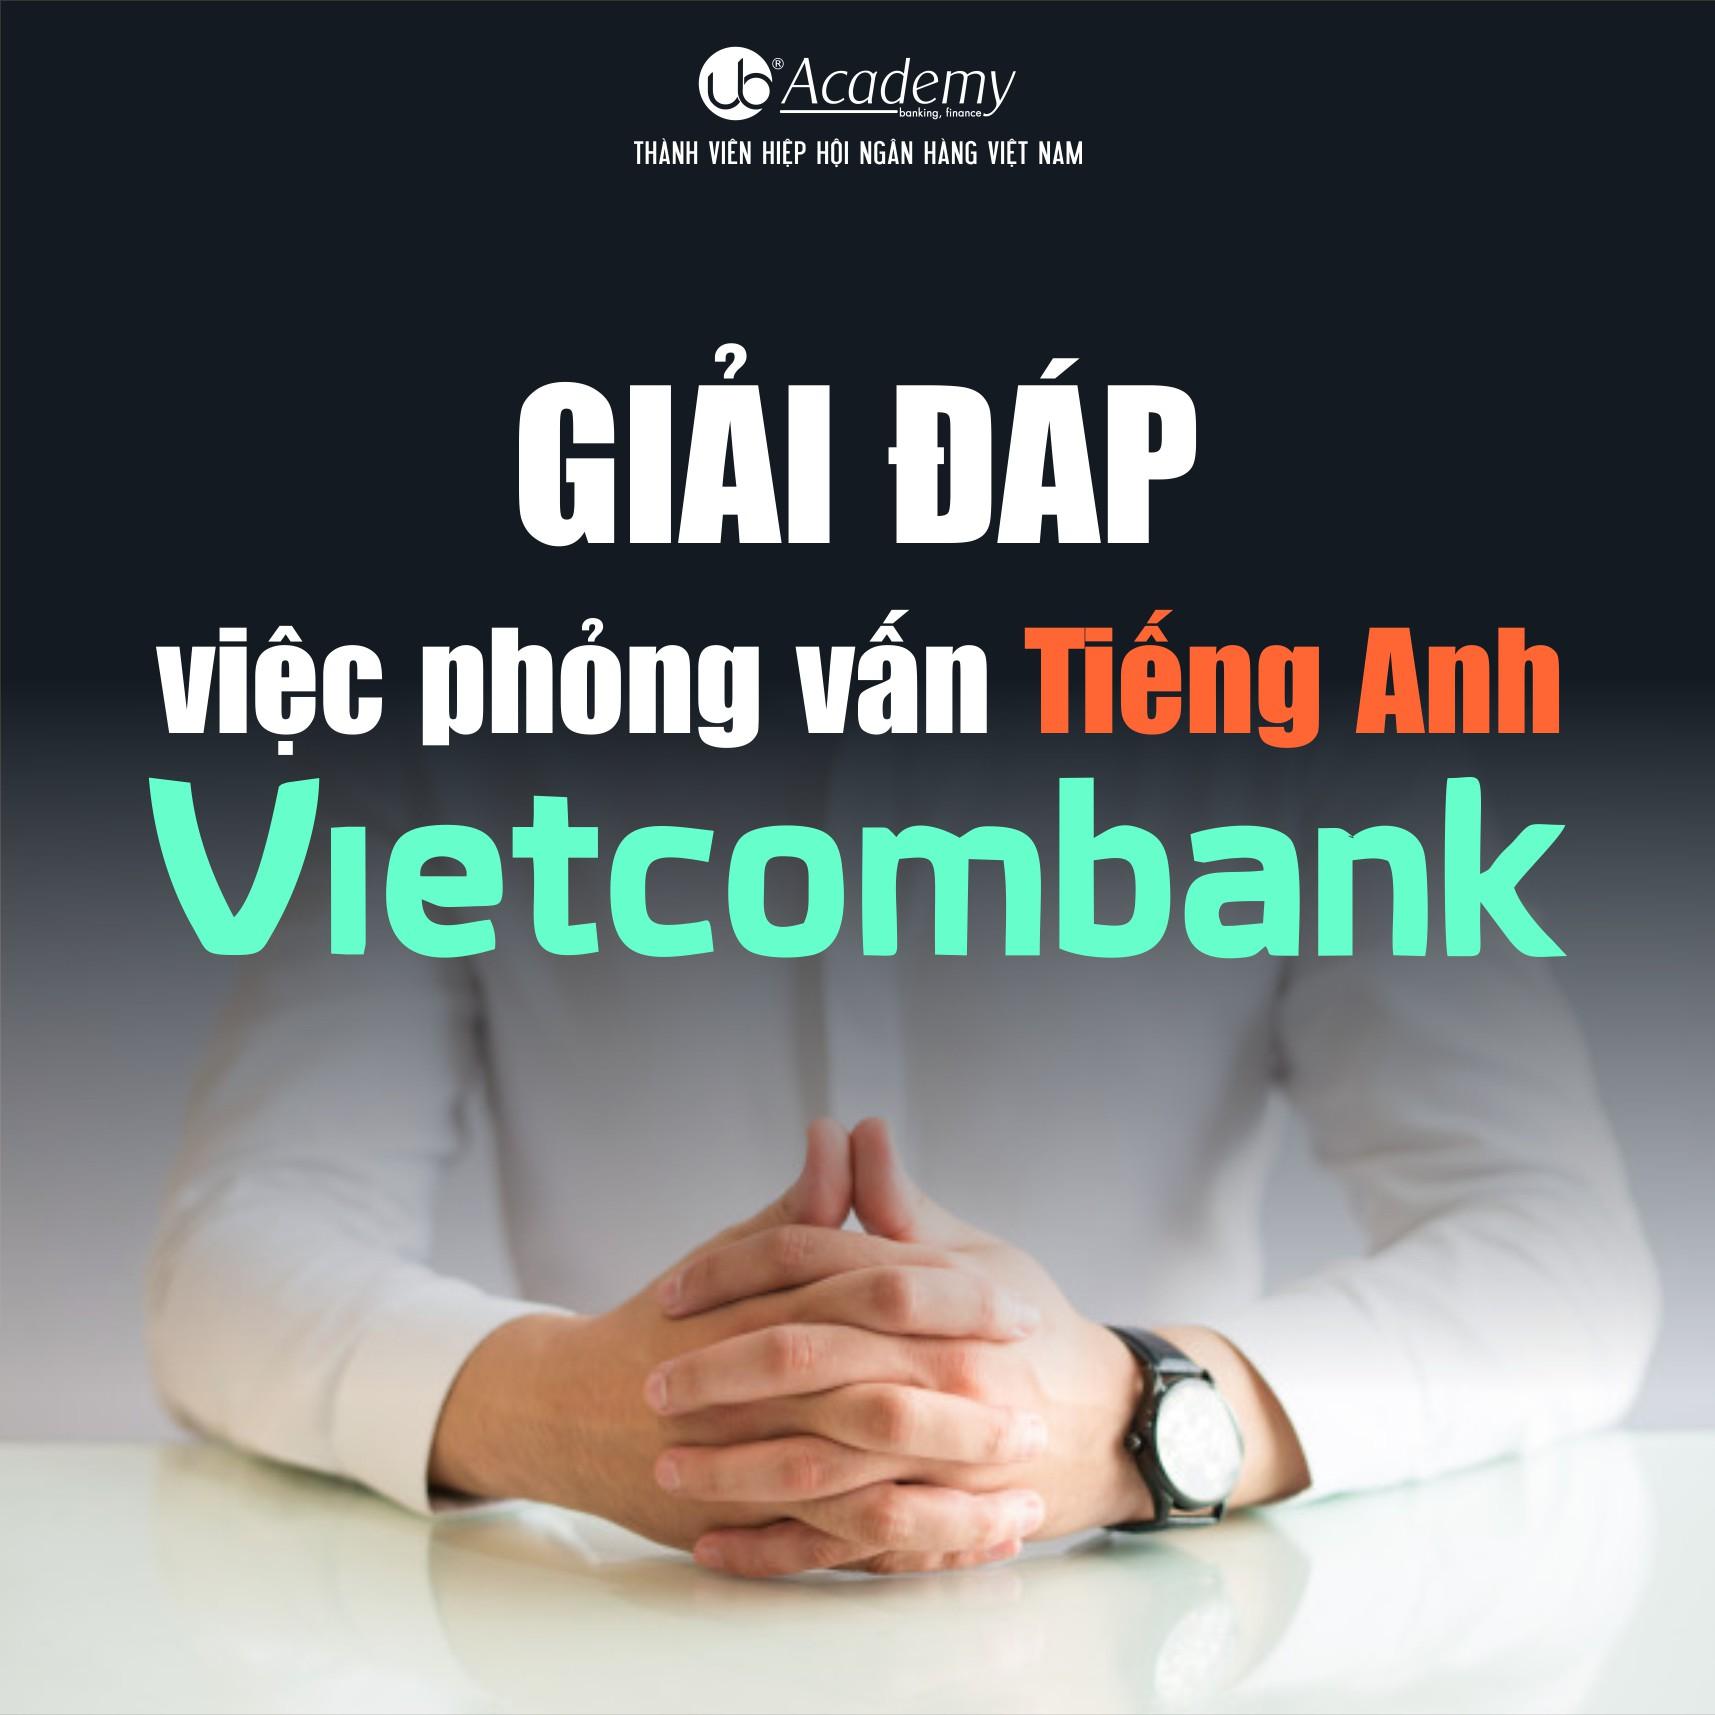 phỏng vấn tiếng anh Vietcombank